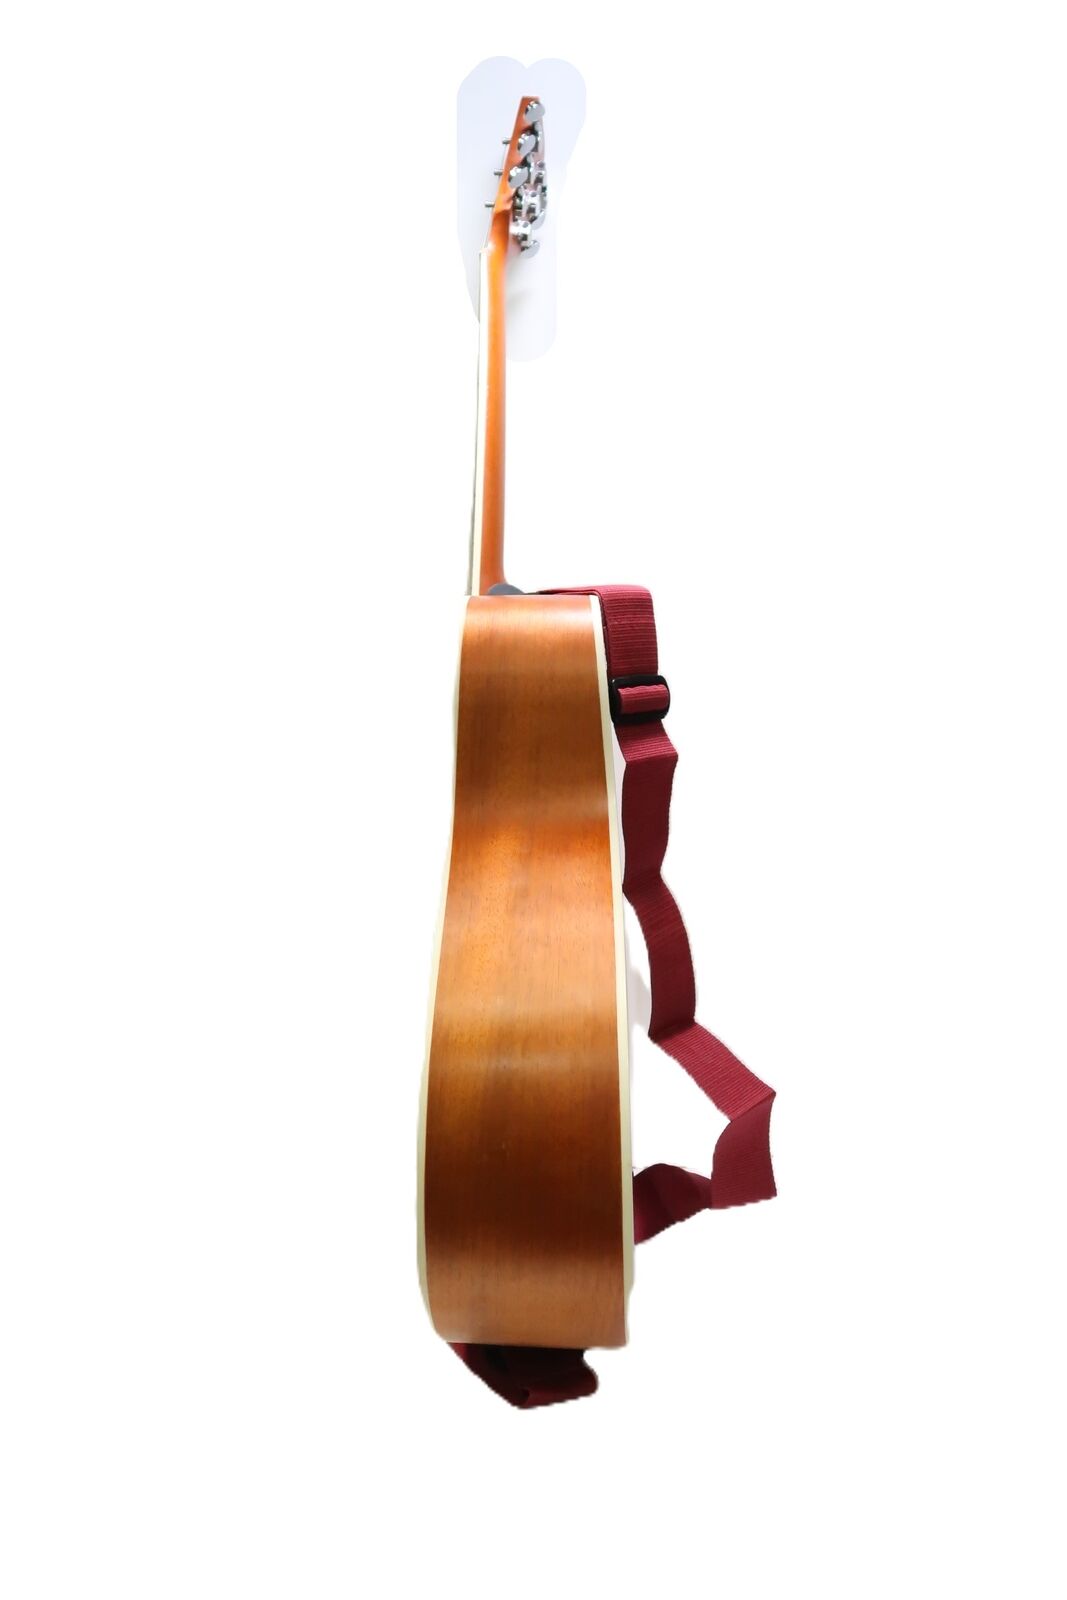 Nashville Guitar Works D10 Acoustic Guitar 9788 5